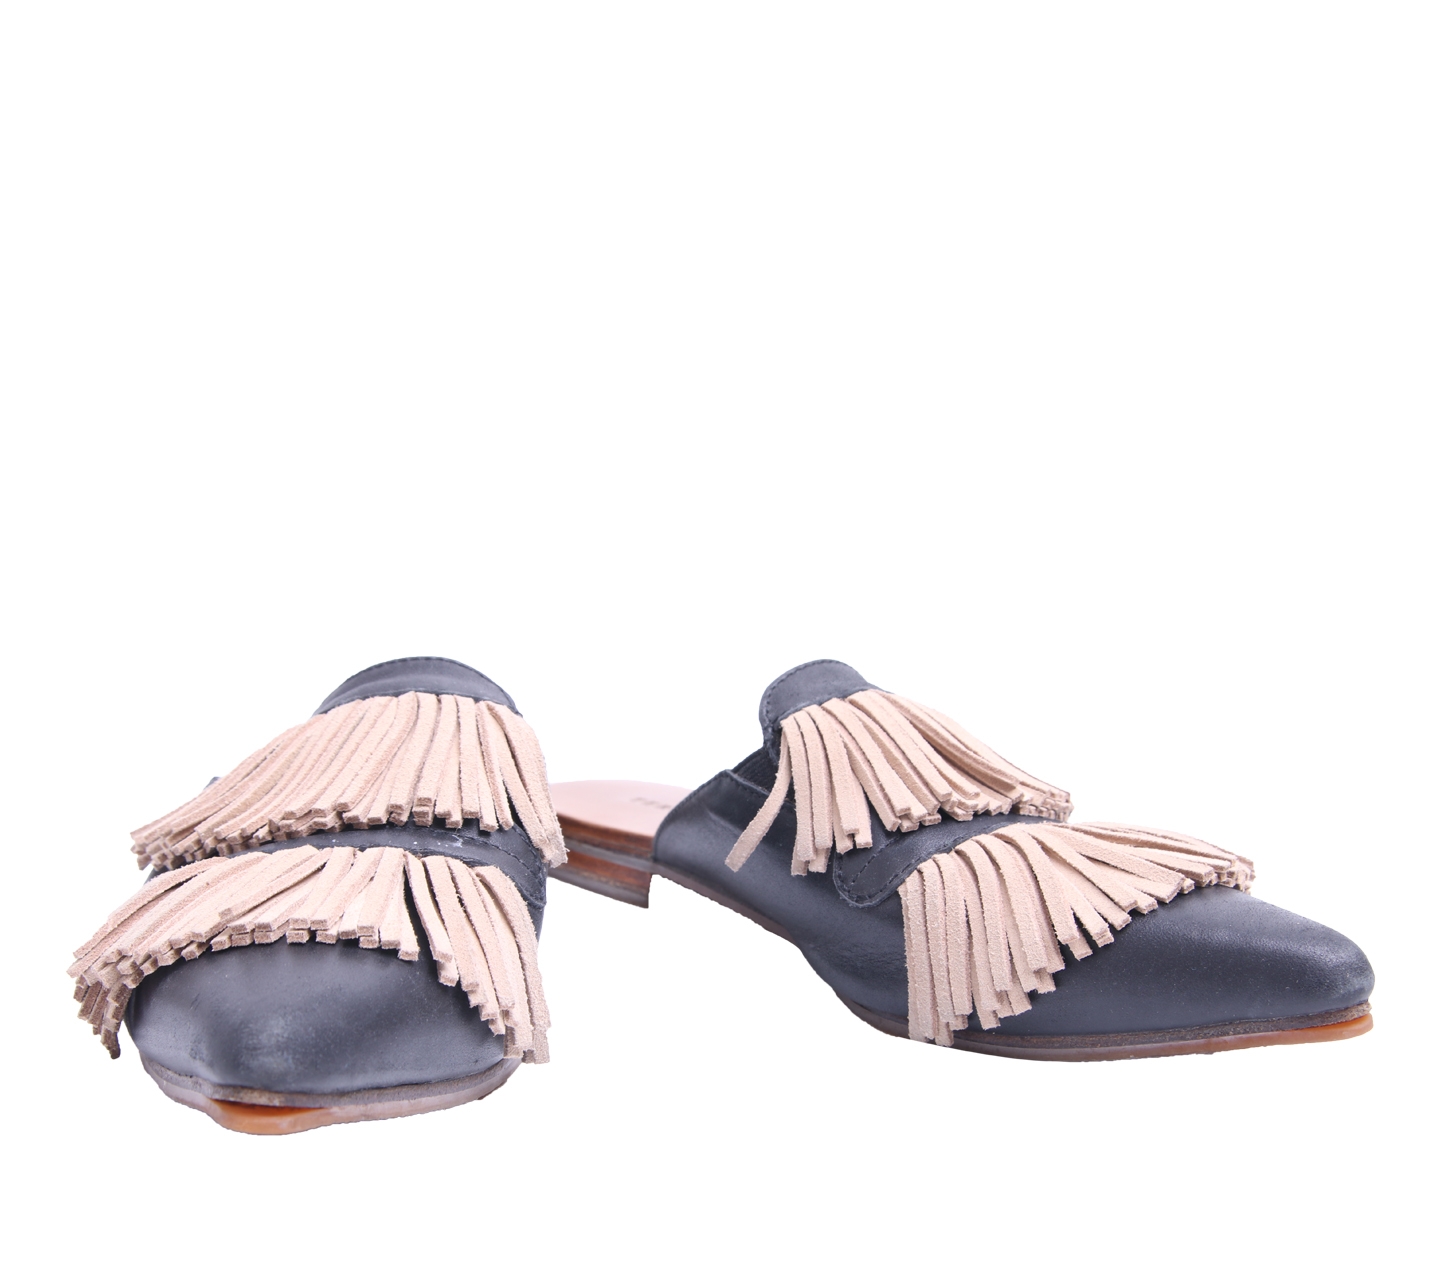 Teresa Mutiara Black Fringe Sandals